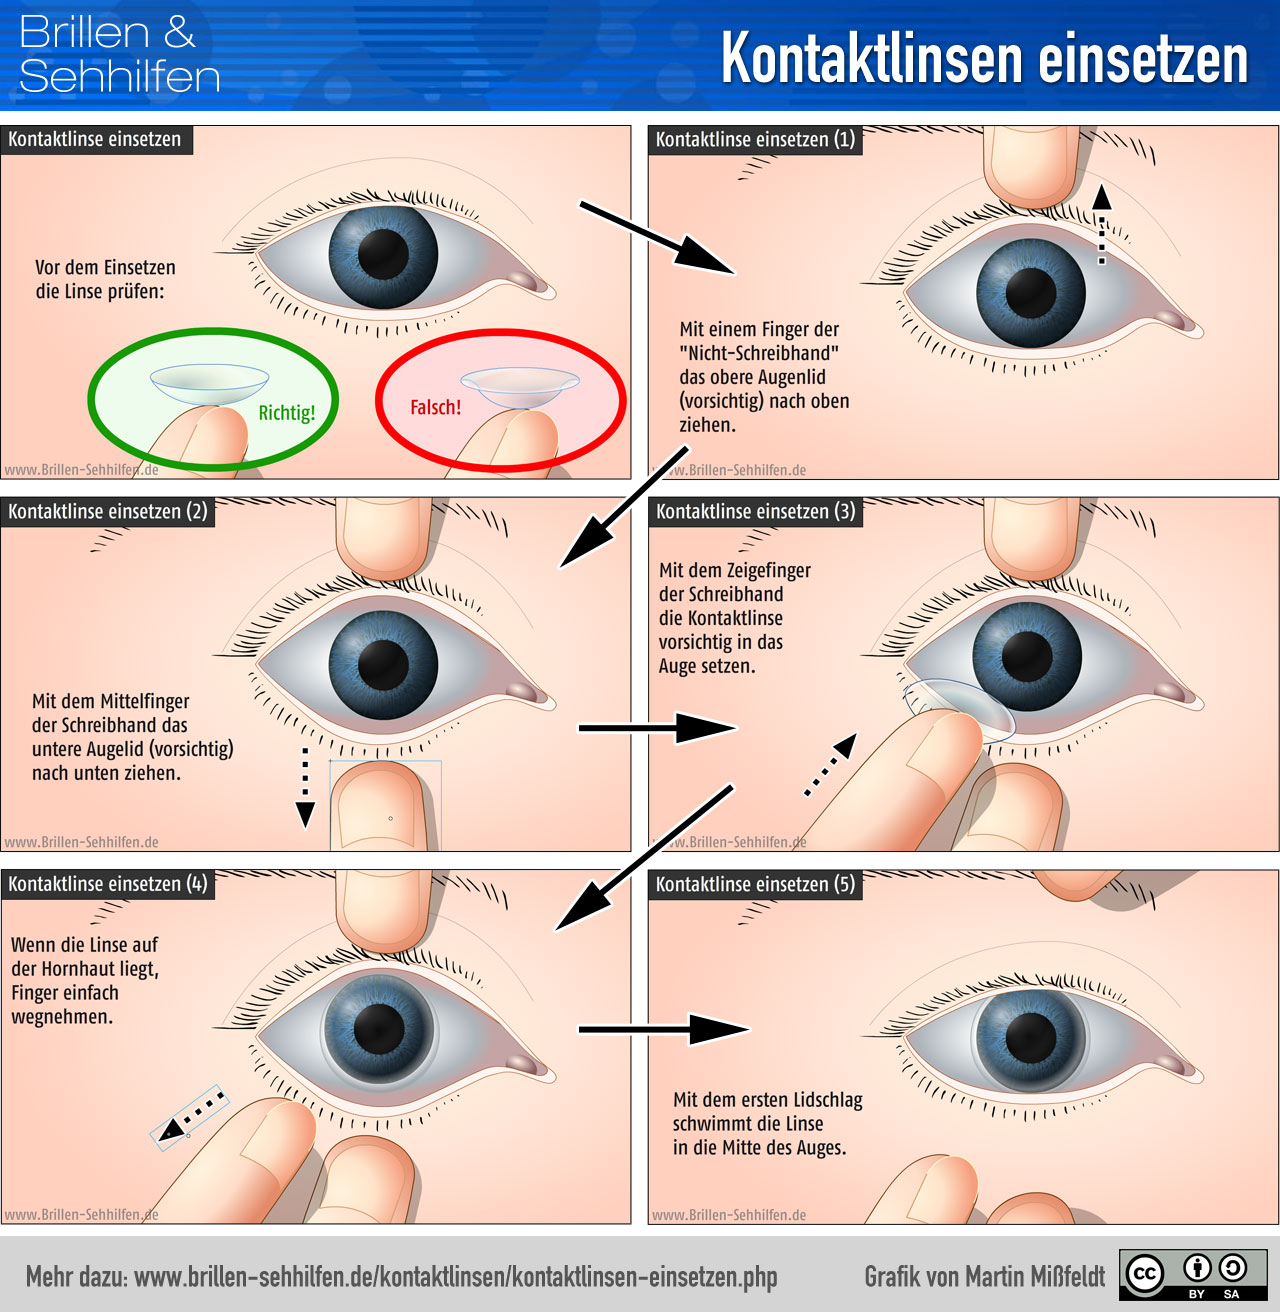 Kontaktlinsen einsetzen (Erklärung mit Bildern)